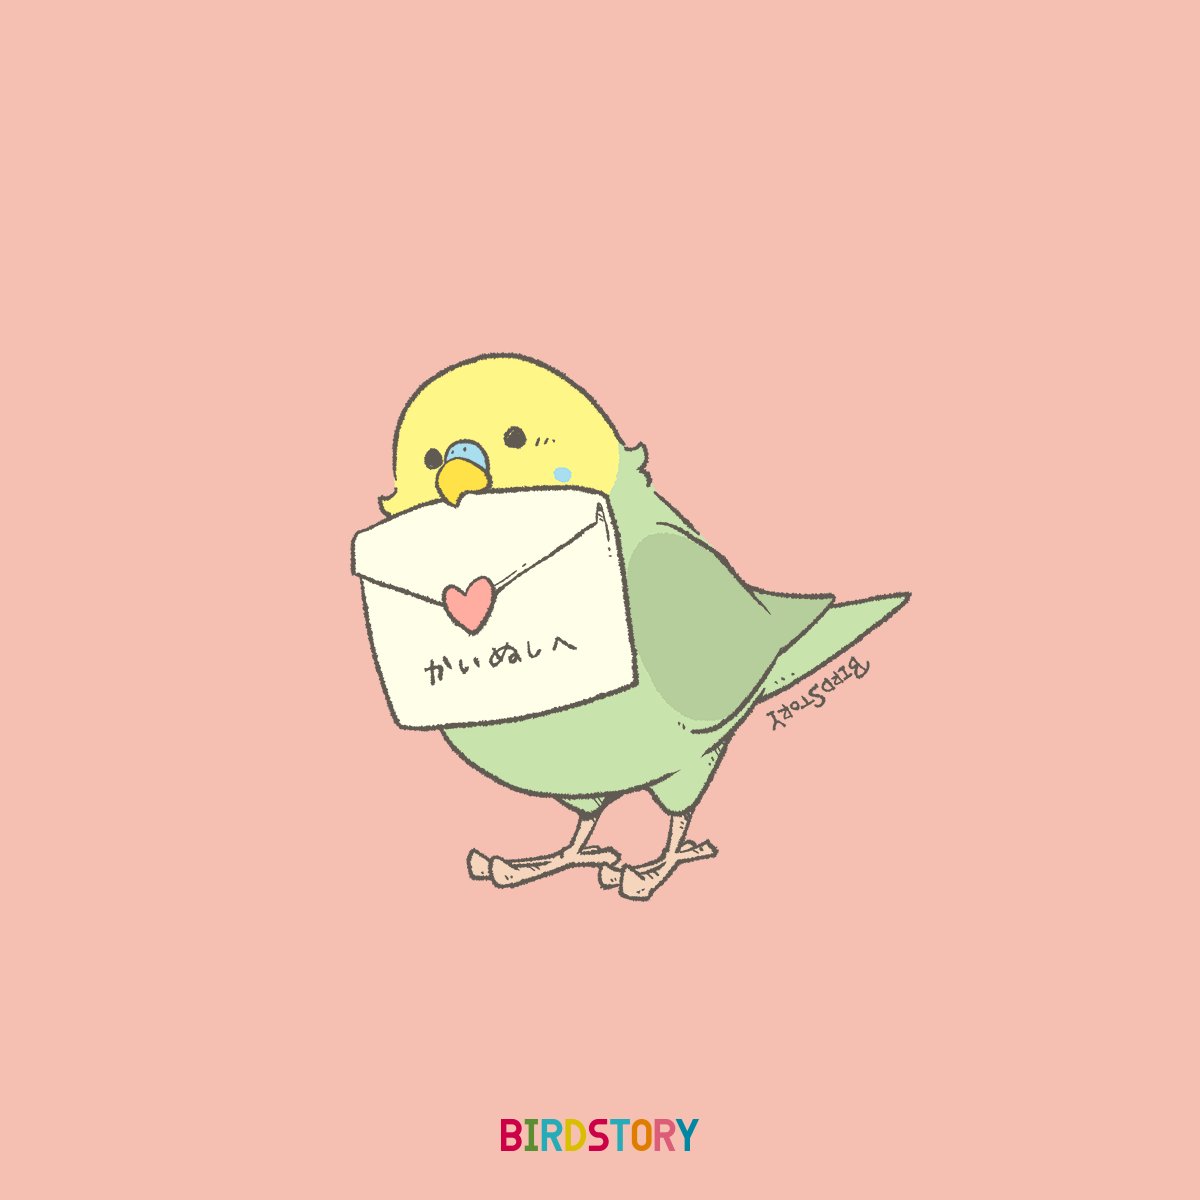 「おはようございます。
本日は5月23日、こいぶみ、恋文の語呂合わせから、ラブレタ」|BIRDSTORYのイラスト